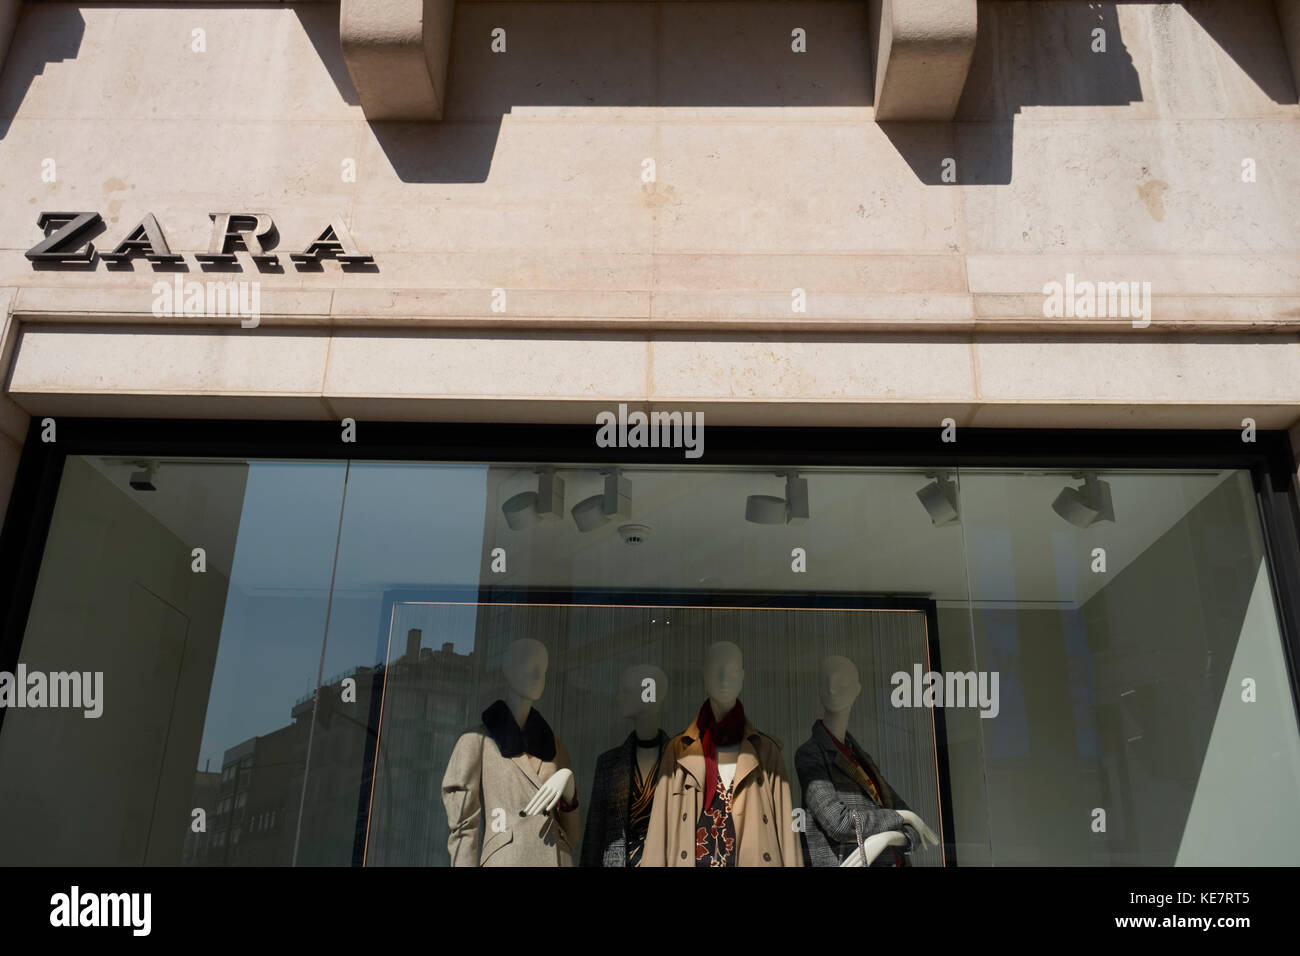 Zara store entrance, logo brand in the facade Stock Photo - Alamy